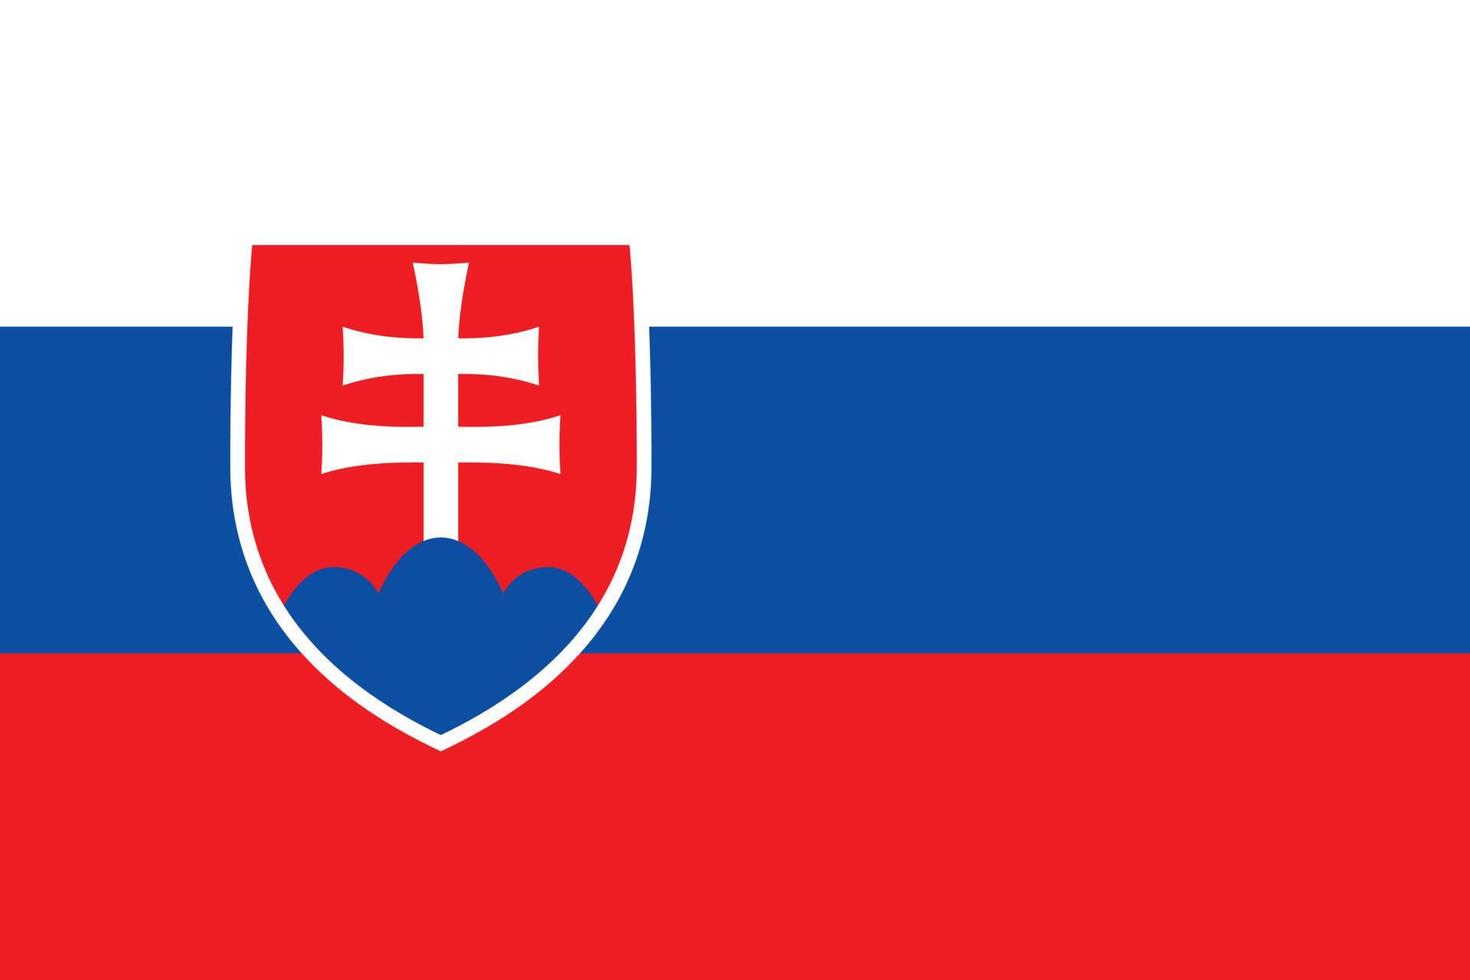 vecteur de drapeau slovaquie